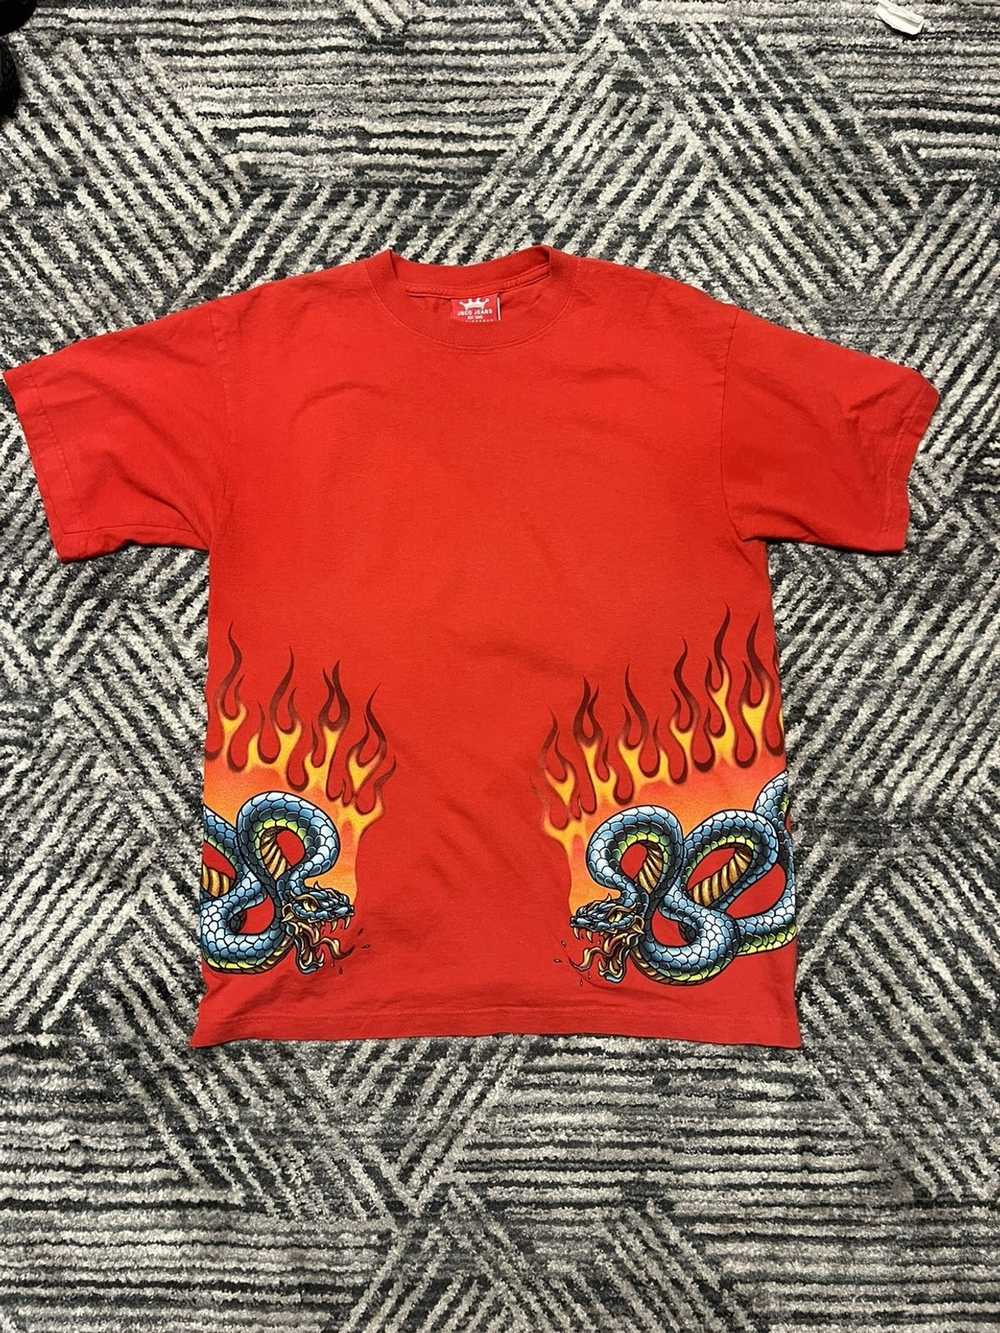 Vintage 90s JNCO Jeans T-Shirt Size M/L Flames Dragons Fire Double